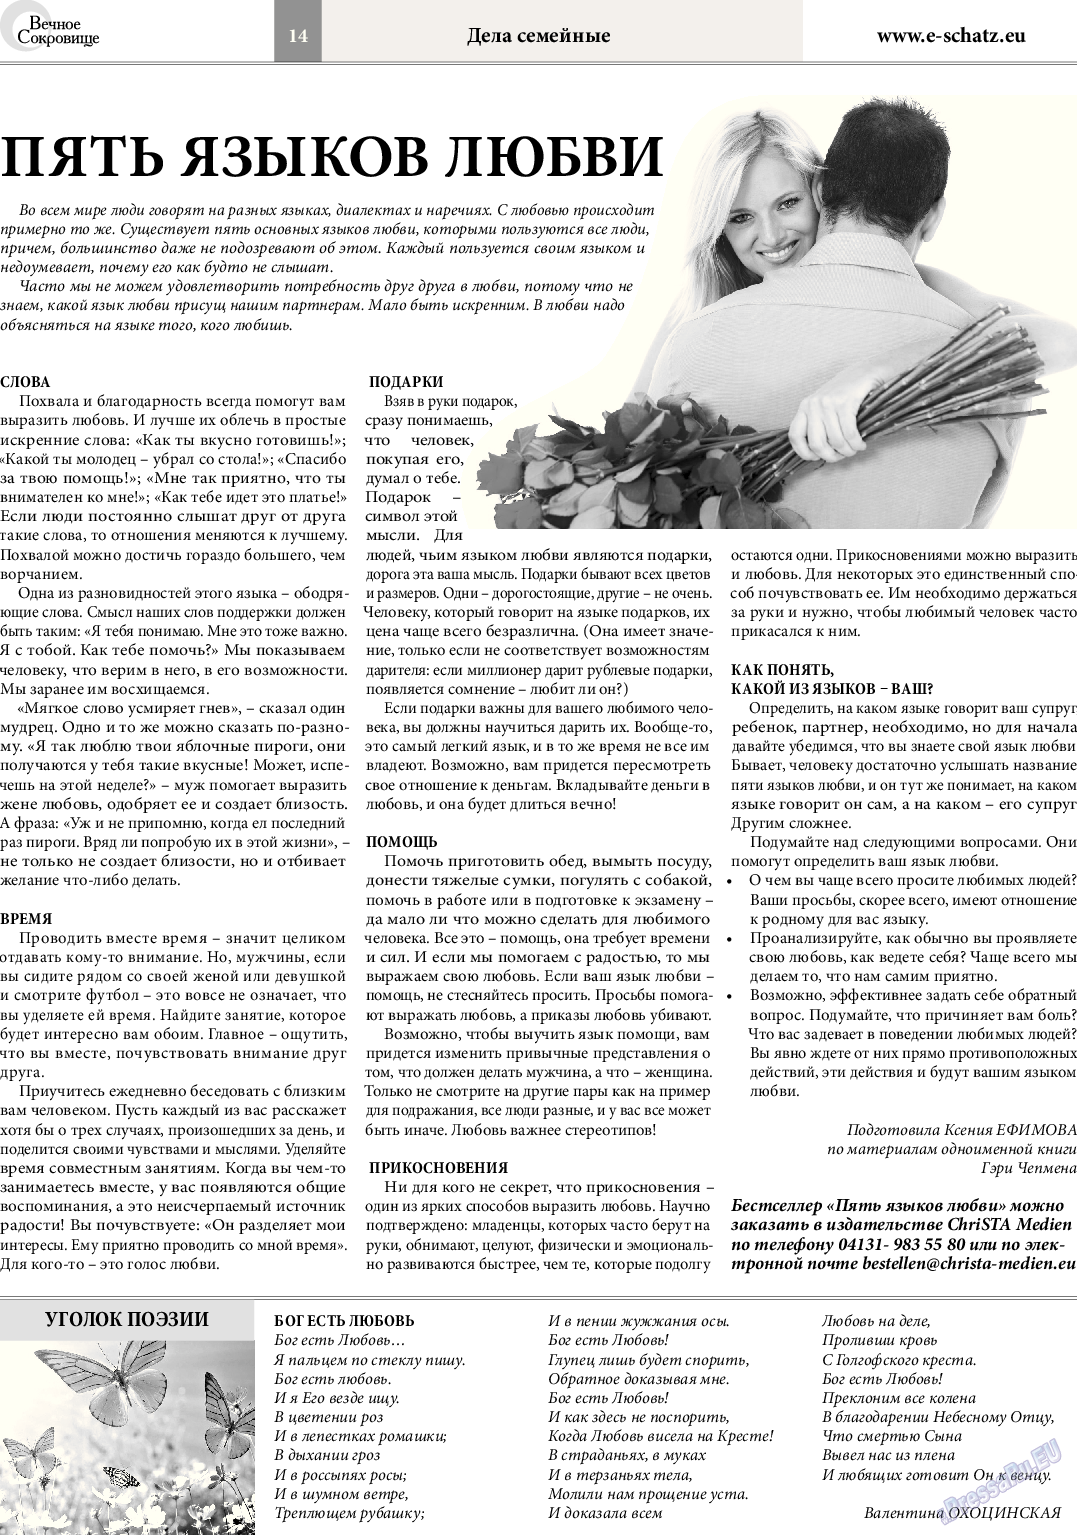 Вечное сокровище, газета. 2014 №2 стр.14